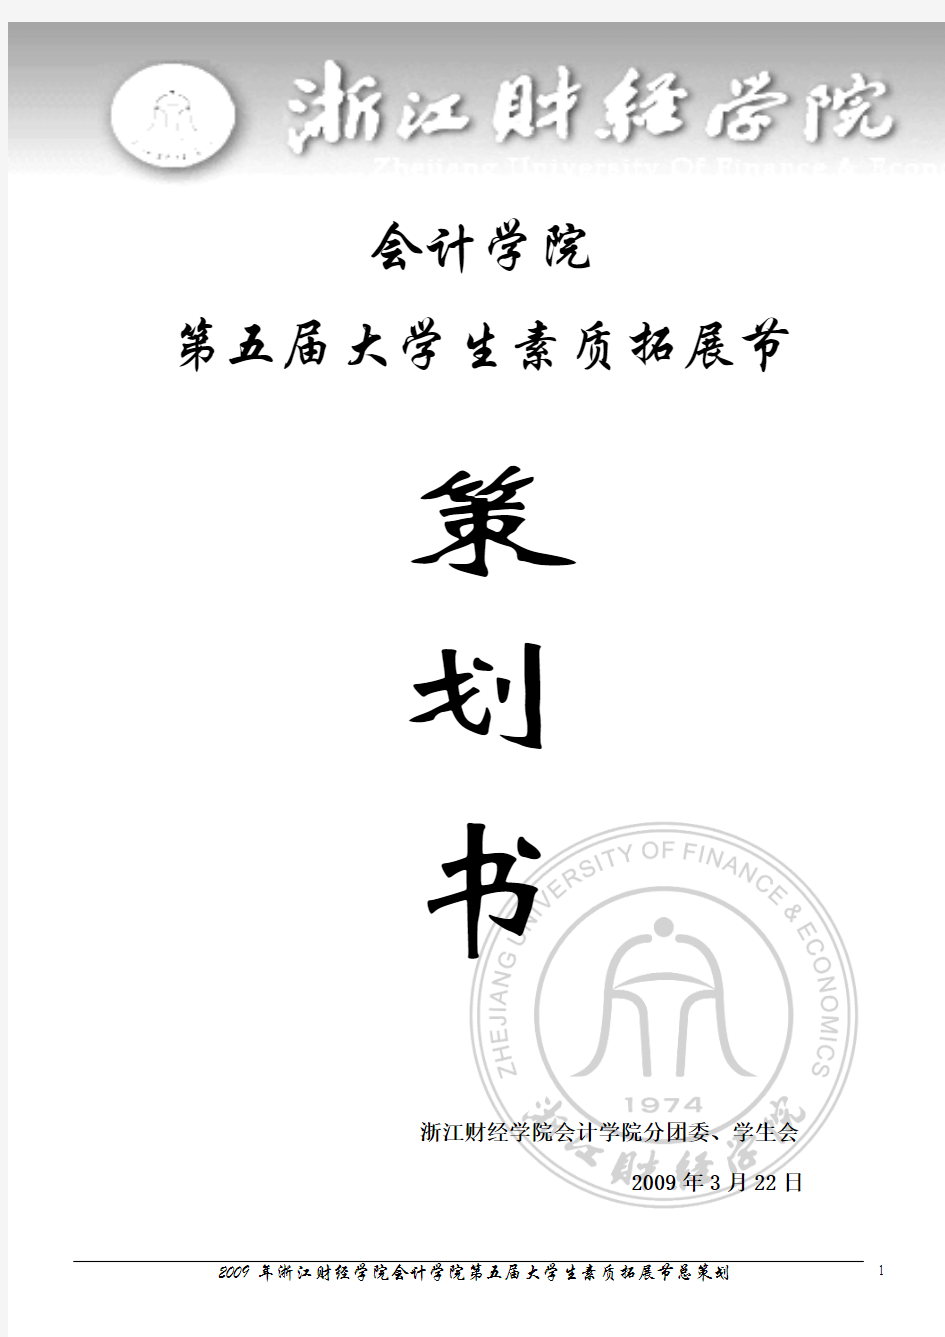 2009年浙江财经学院会计学院第五届素质拓展节总策划2